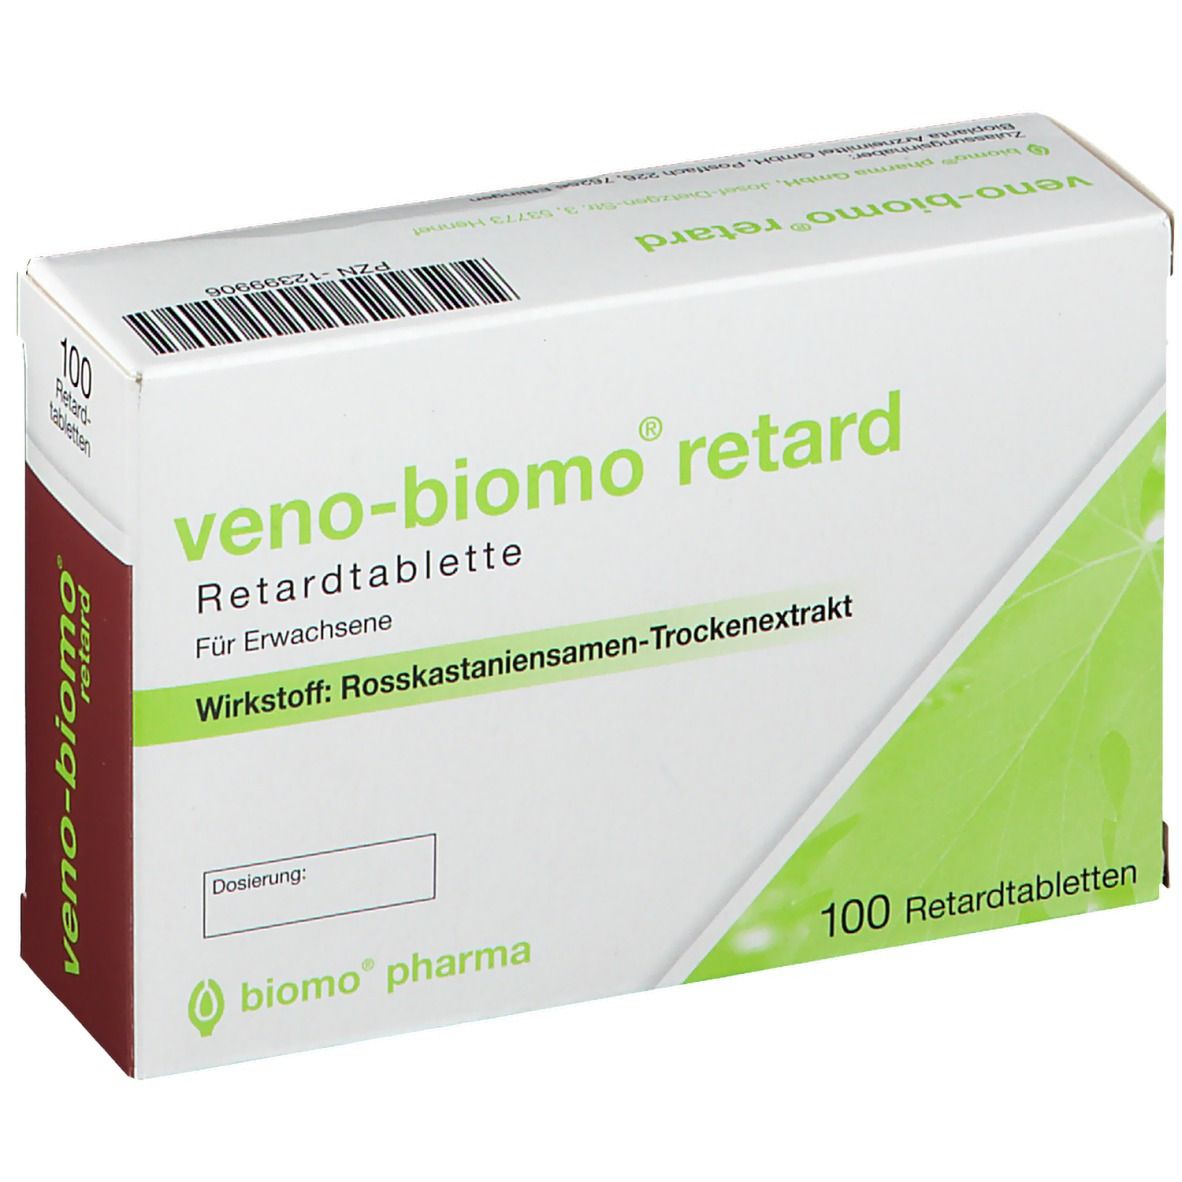 Veno-Biomo retard Retardtabletten